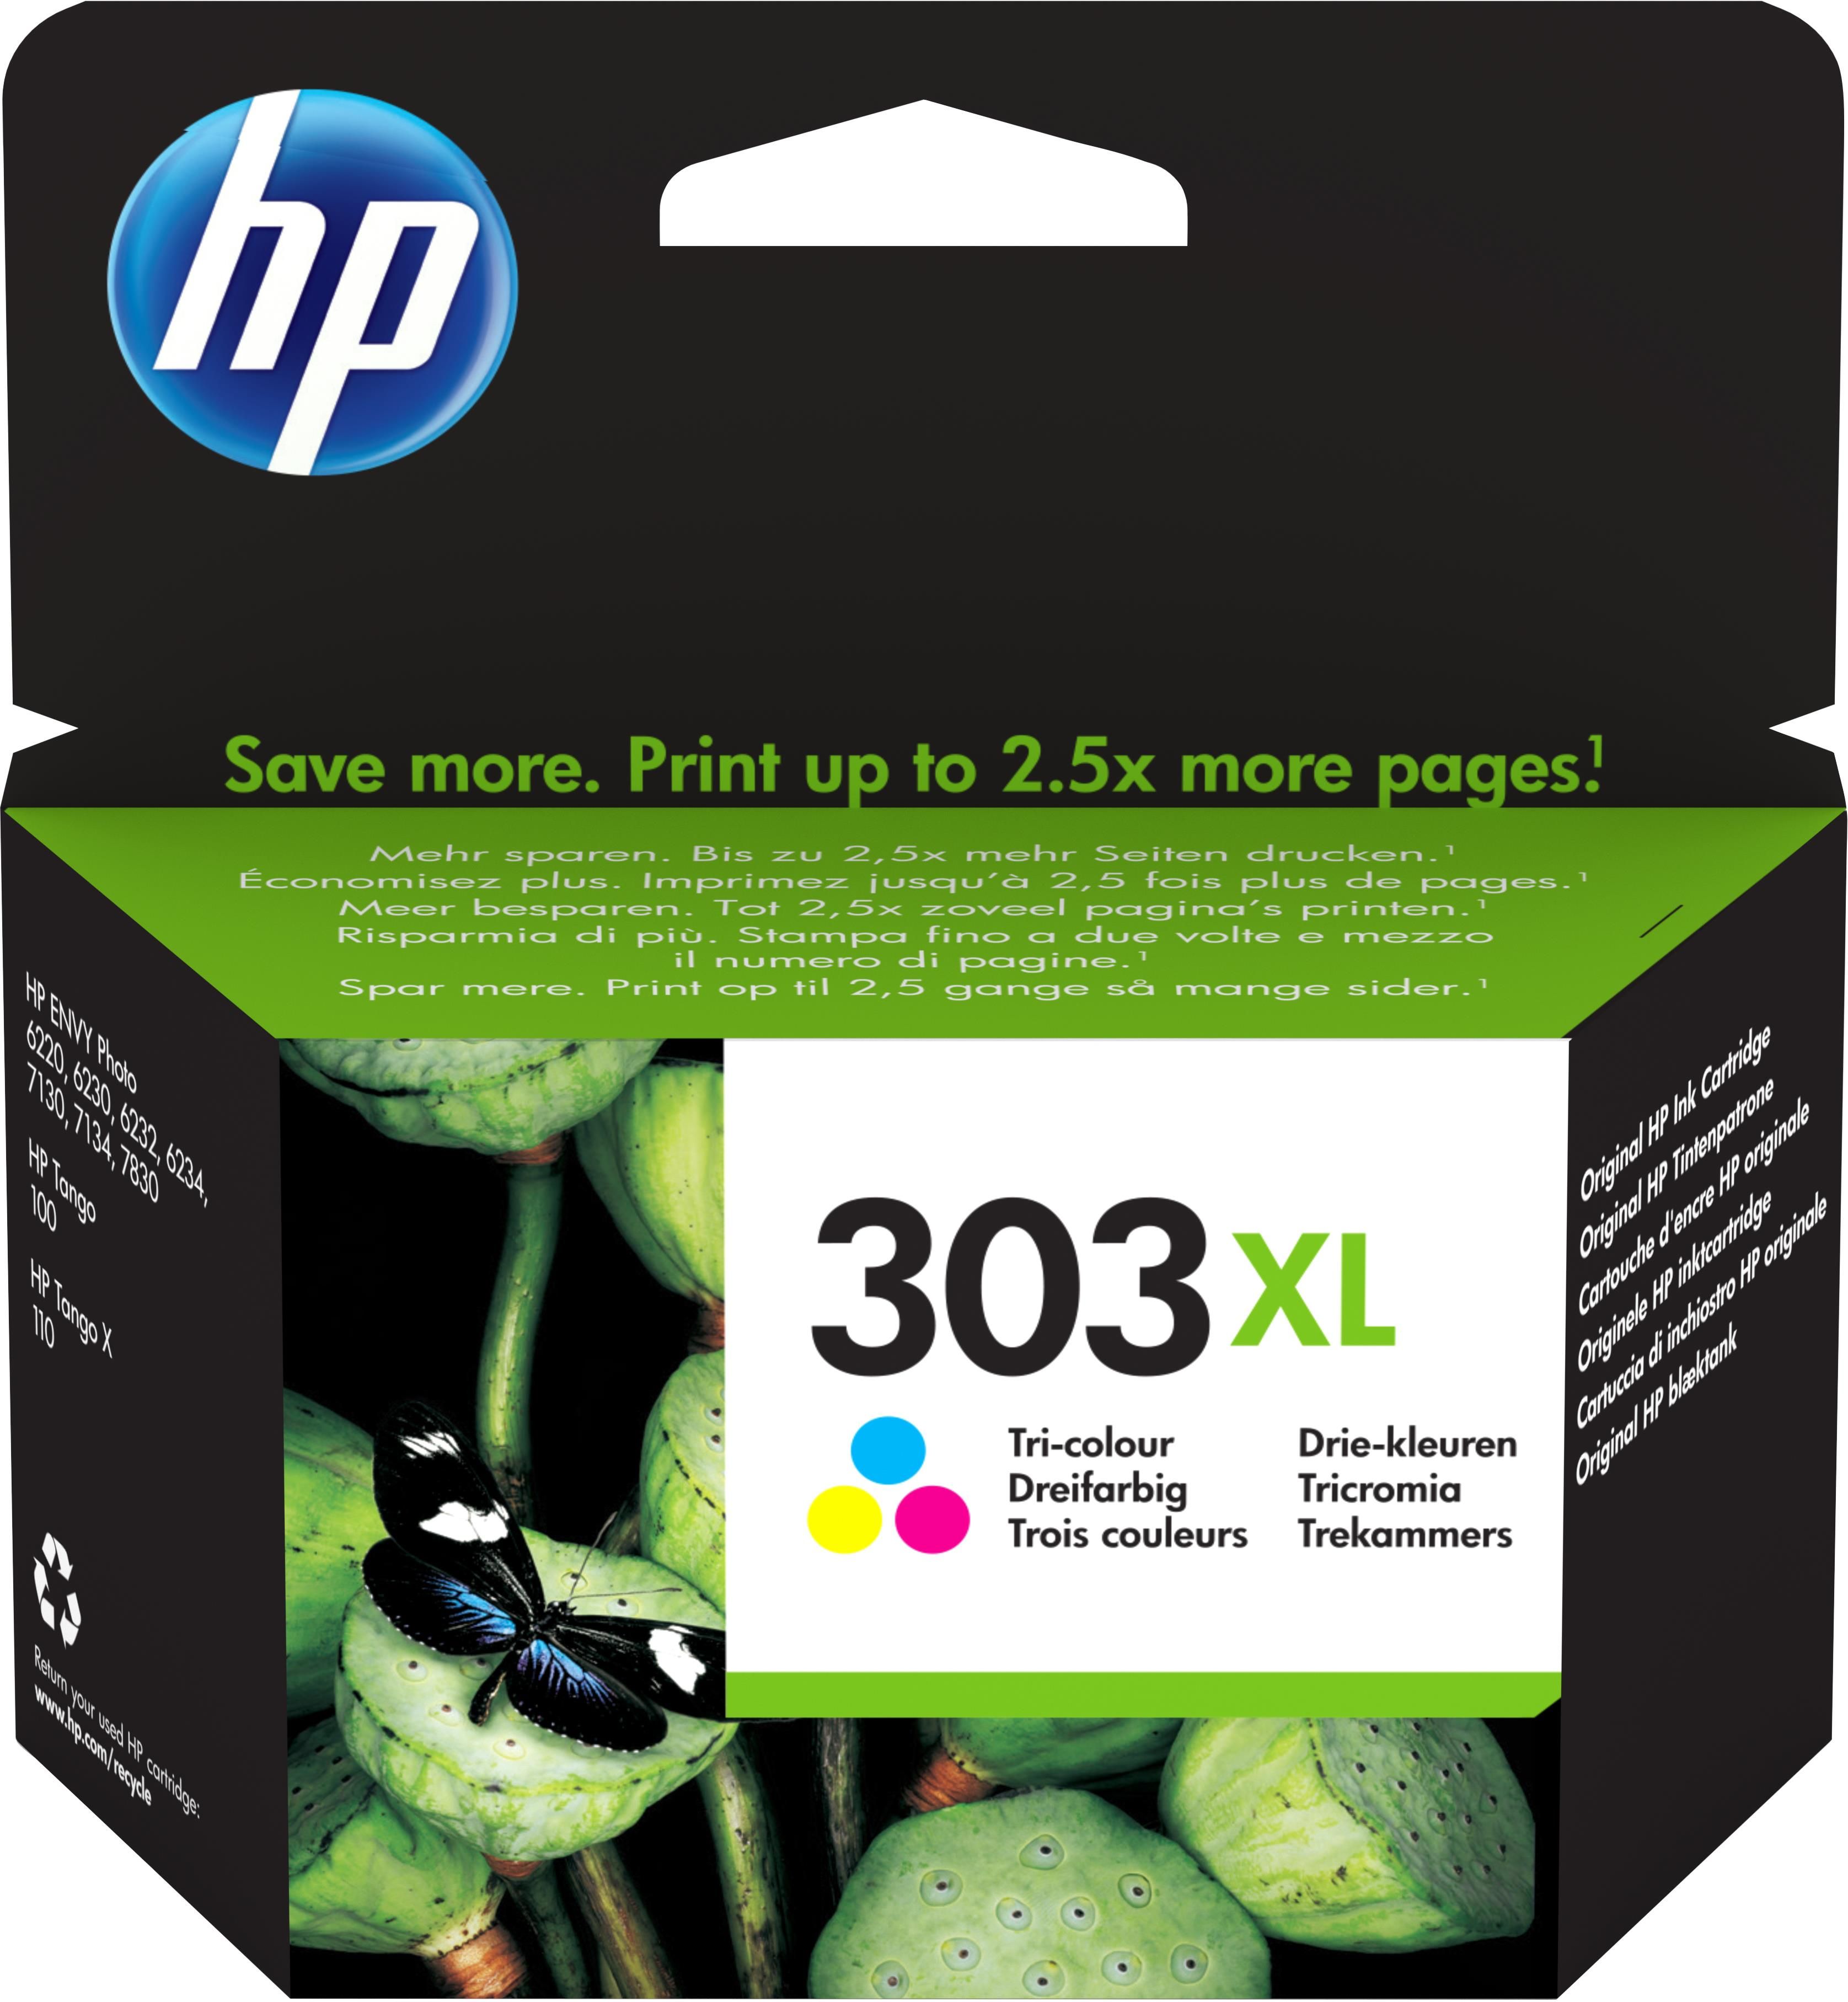 HP Cartuccia d'inchiostro 303 black EnvyPhoto T6N02AE acquistare